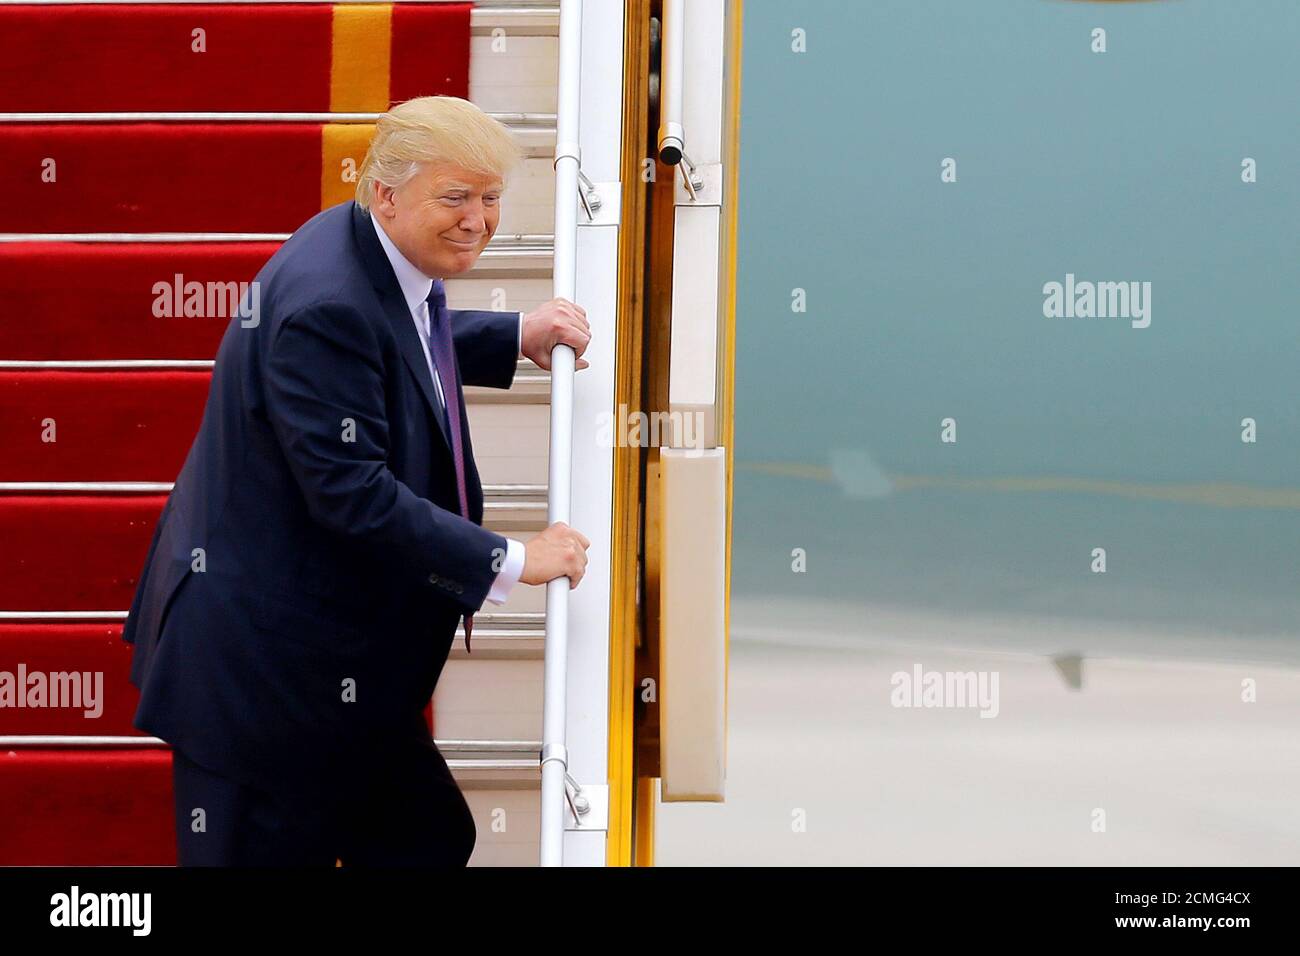 Il presidente DEGLI STATI UNITI Donald J. Trump guarda alle scale dell'aeronautica uno prima di partire dall'aeroporto internazionale noi Bai, ad Hanoi, Vietnam 12 novembre 2017. REUTERS/Minh Hoang/Pool Foto Stock